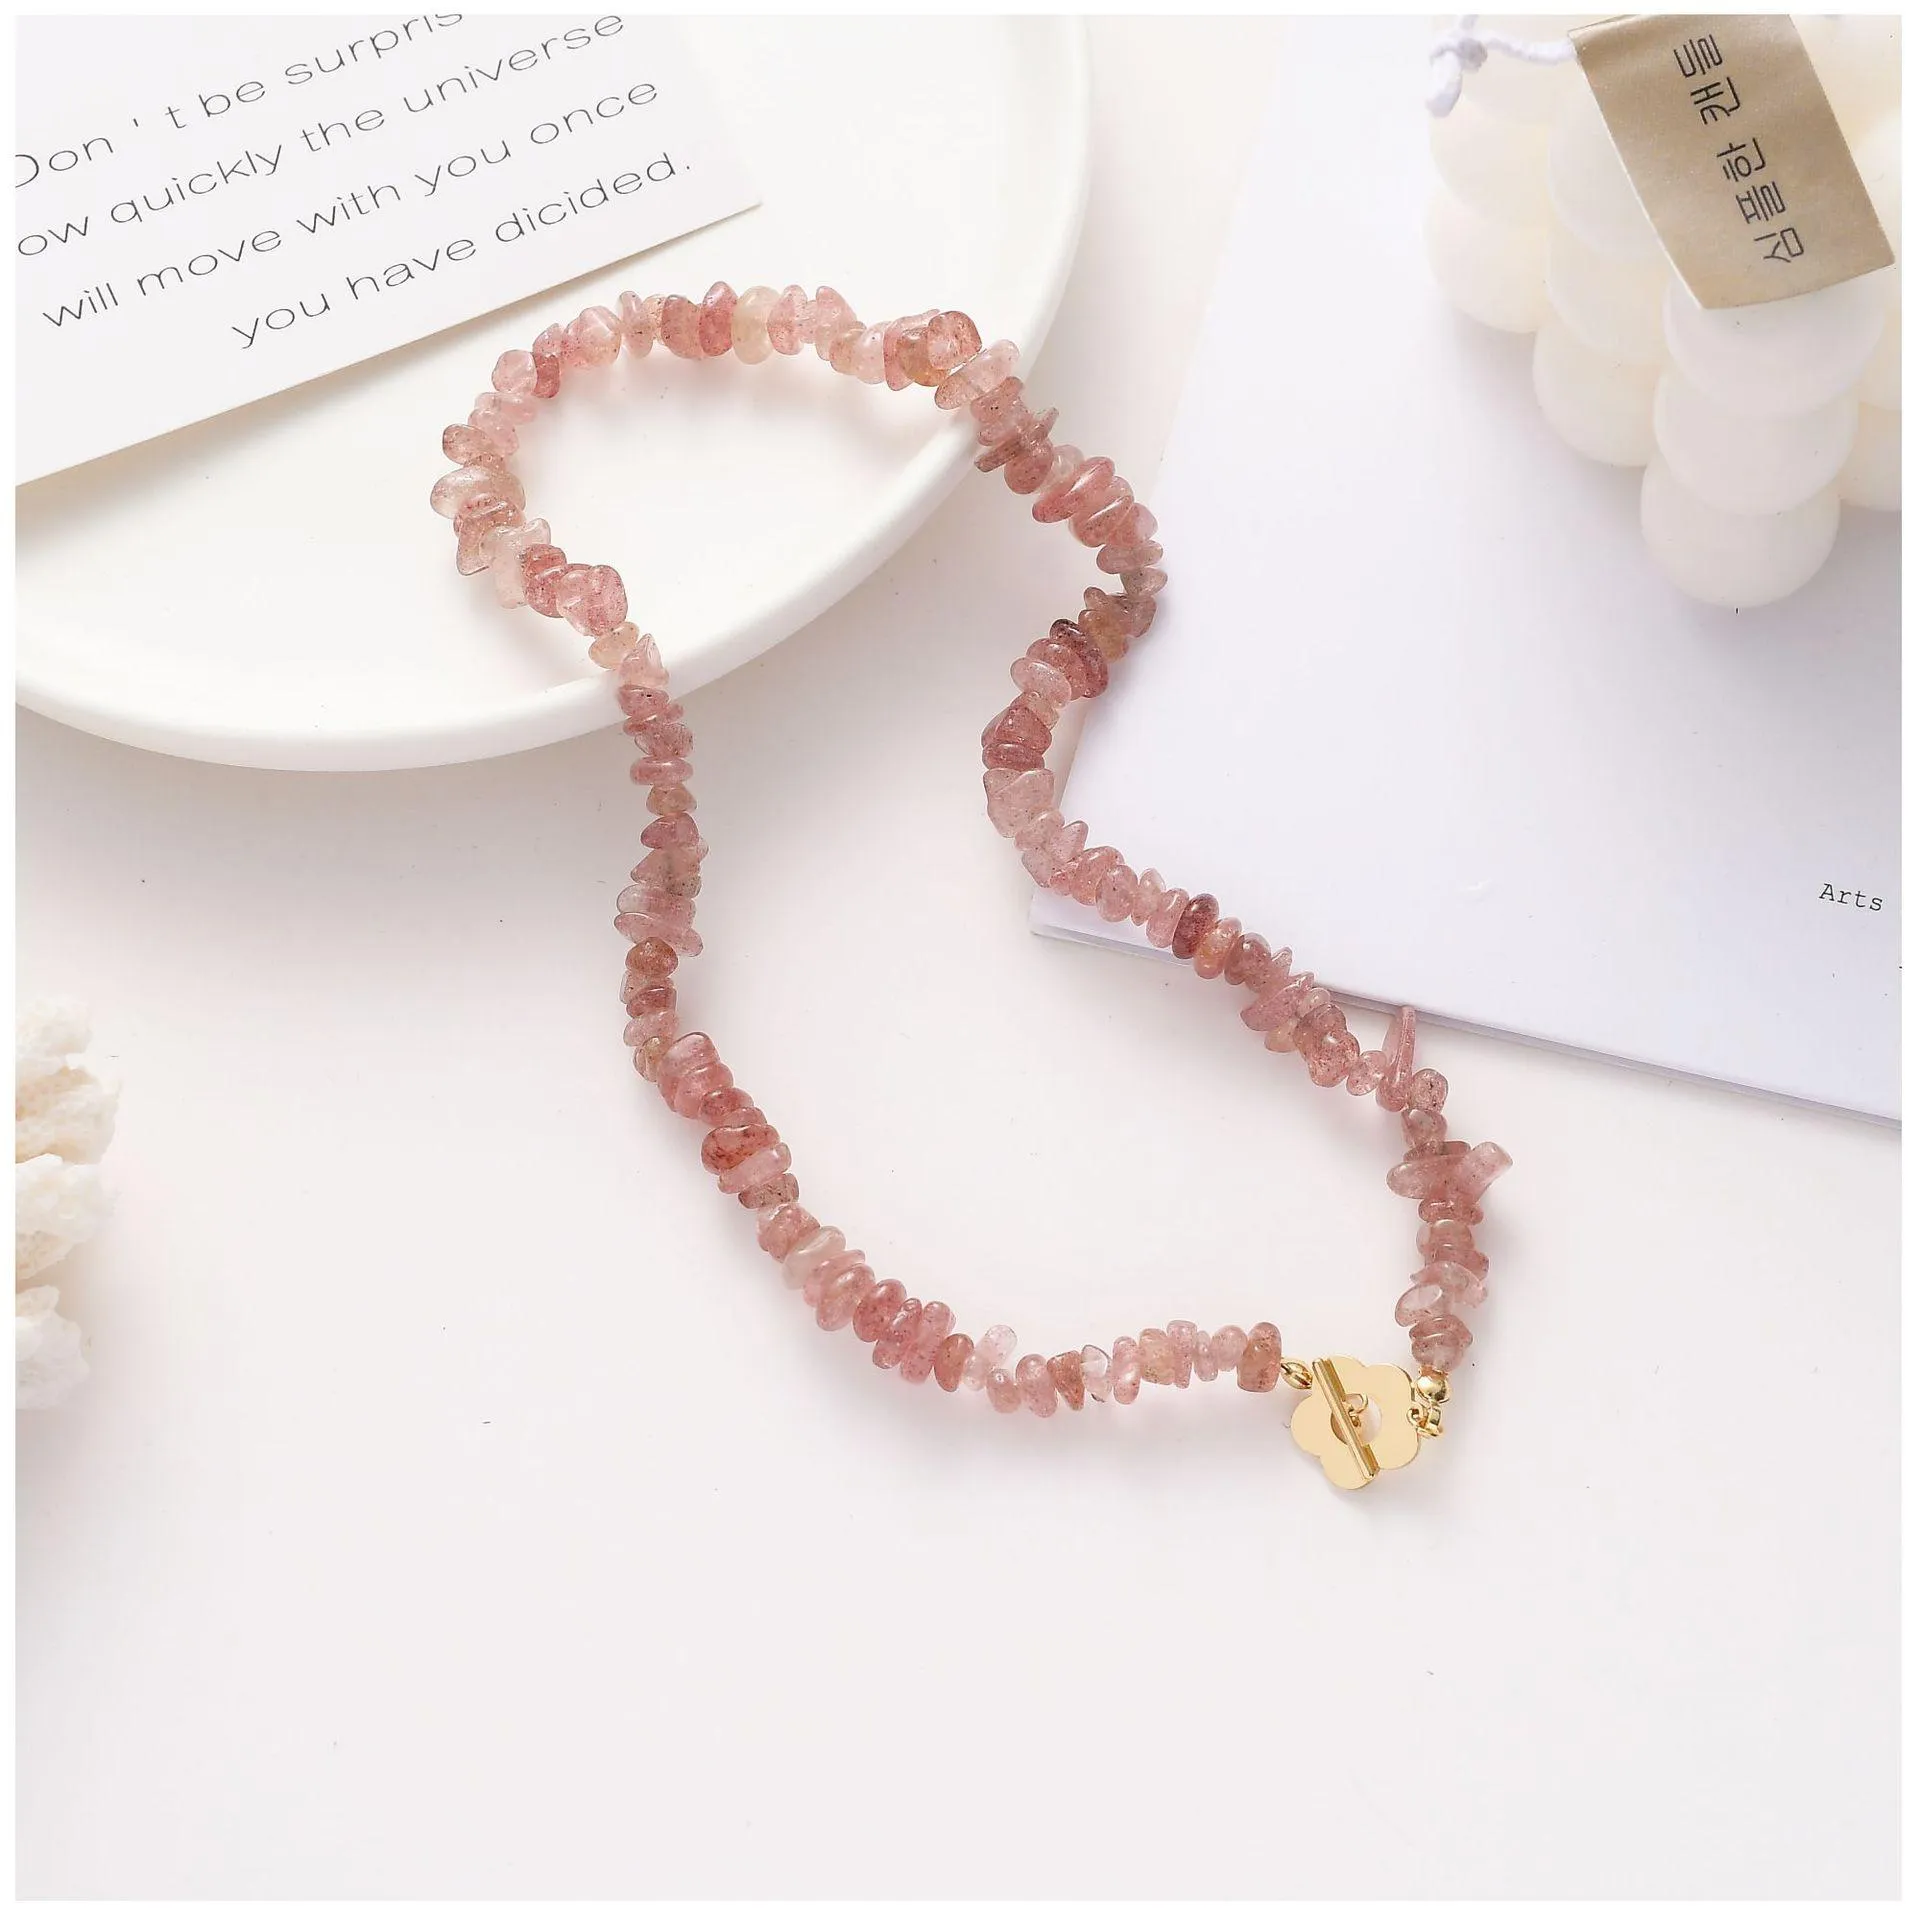 Frauen Mode Armband Halsketten 2020 Neue Erdbeere Kristall Perlen Süße Elegante Anhänger Halsketten Erklärung Schmuck Zubehör